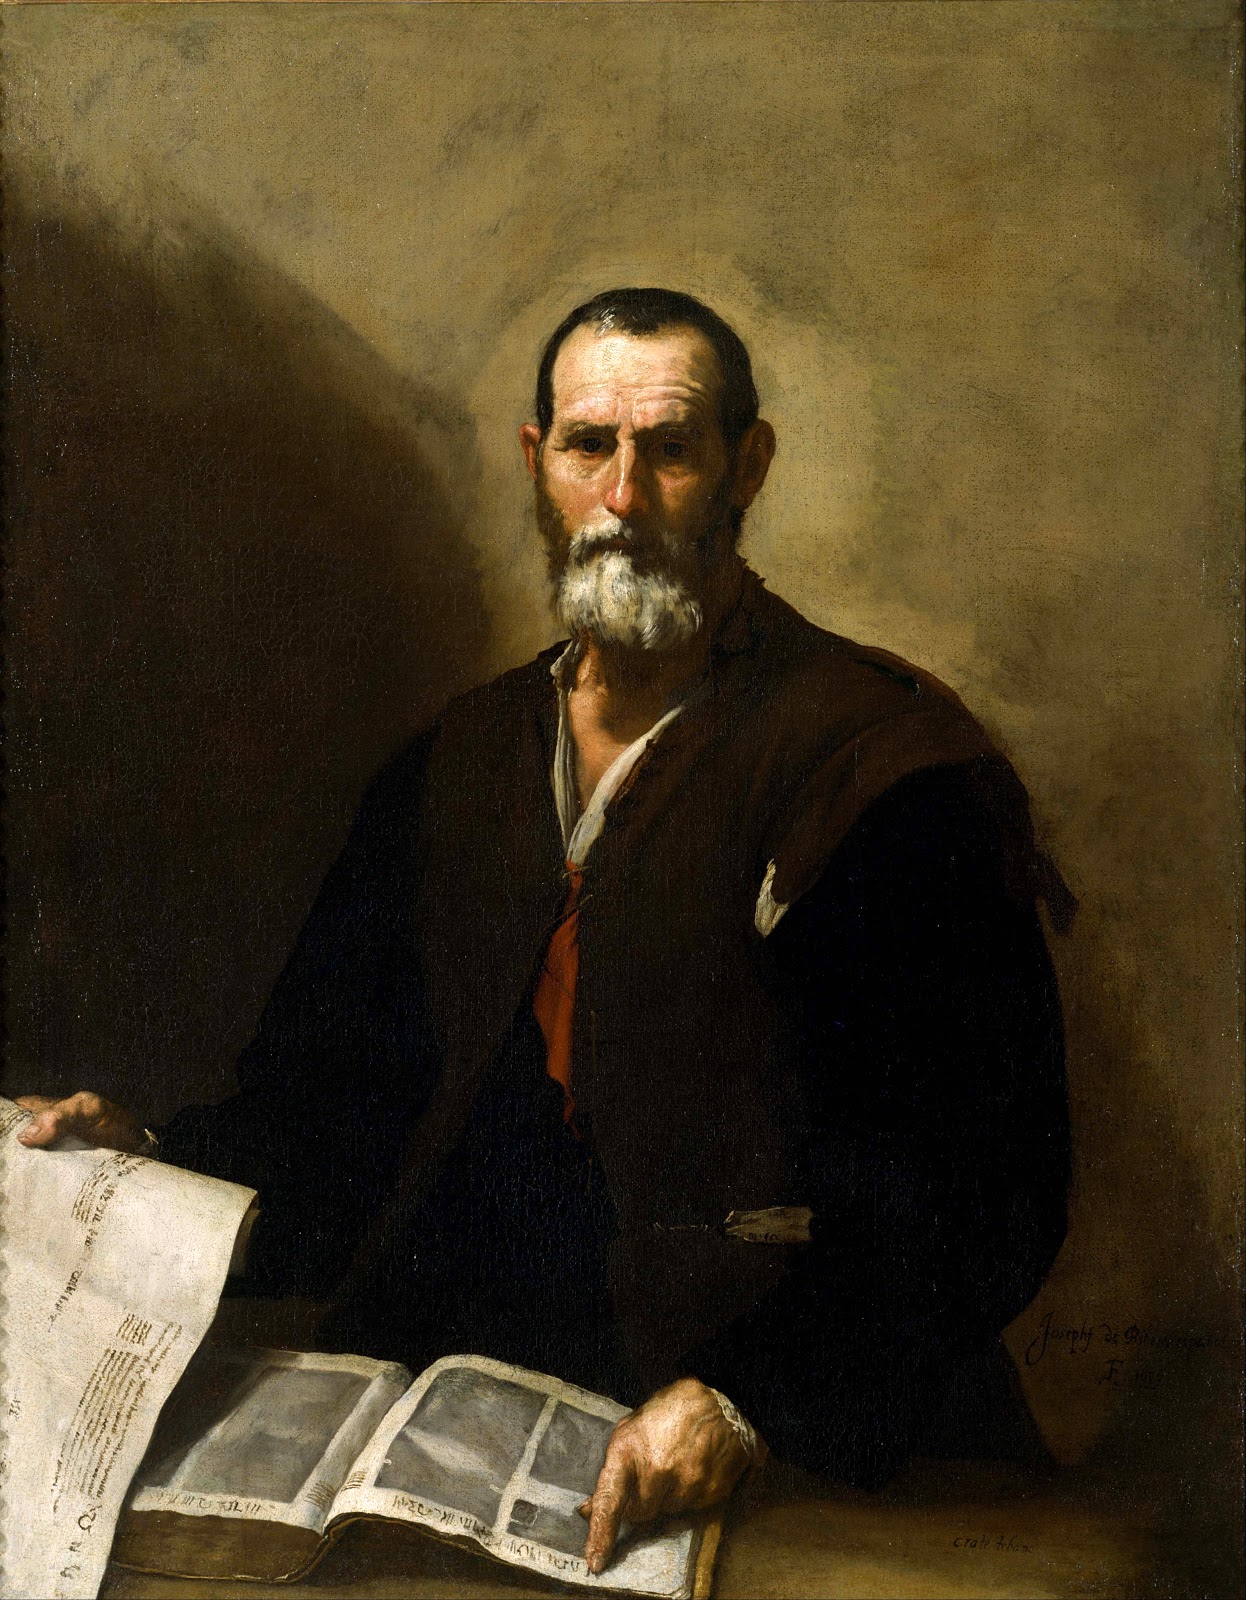 Jusepe+de+Ribera-1591-1652 (37).jpg